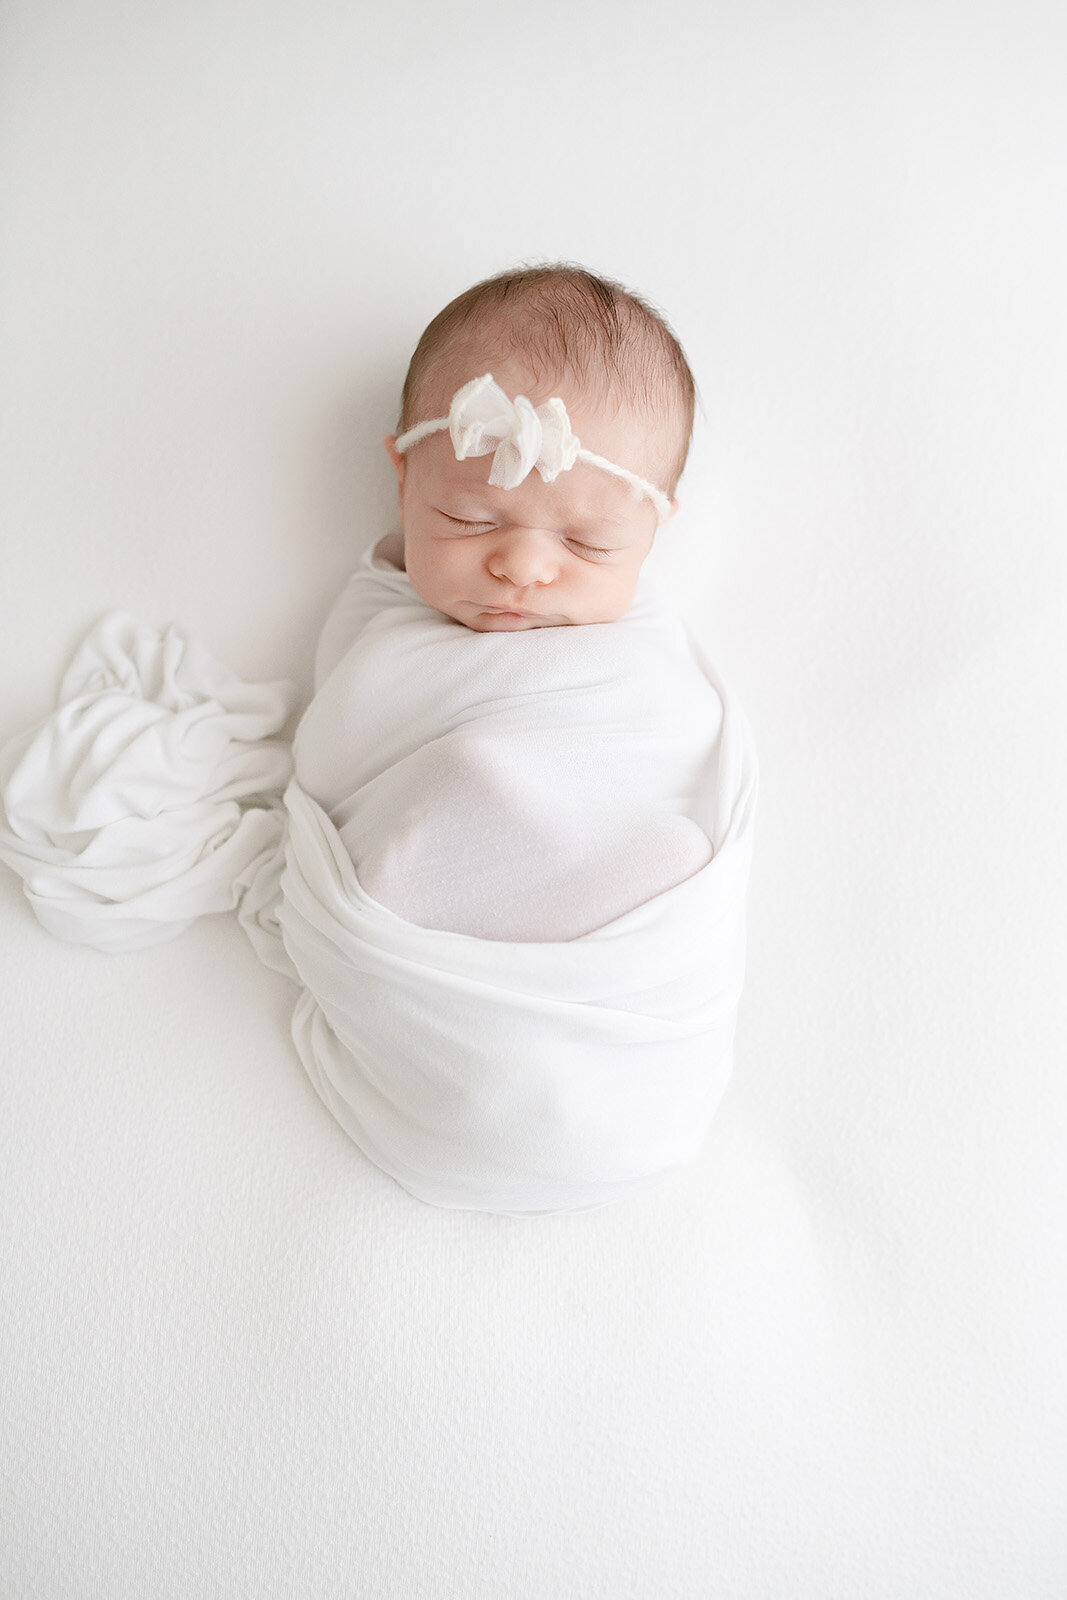 destin-newborn-photographer-27